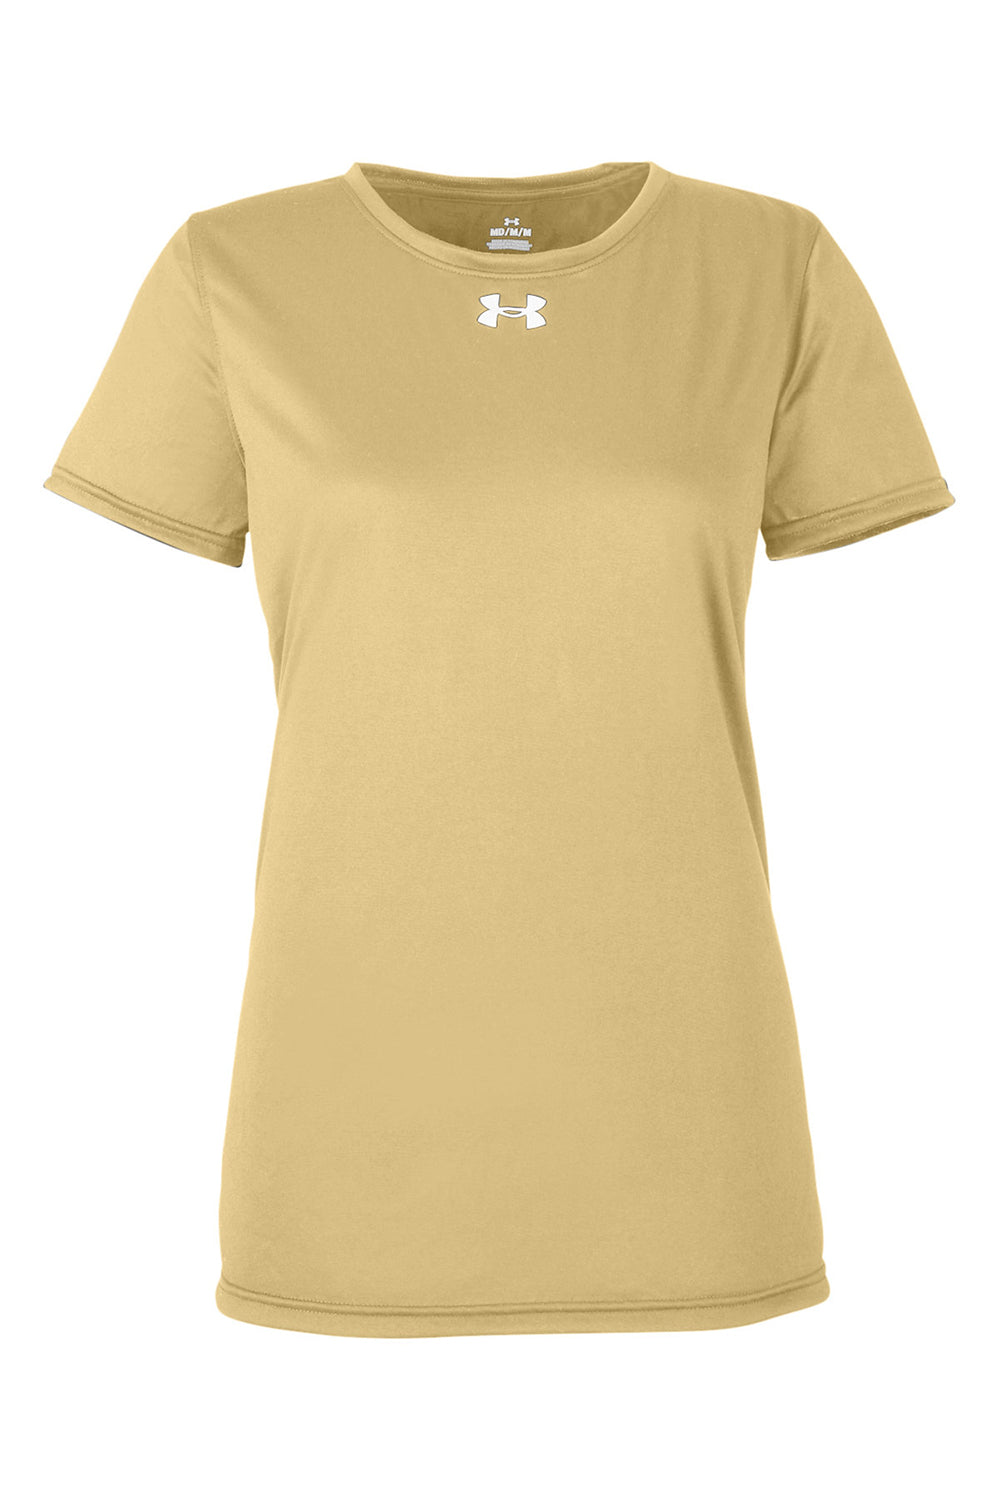 Under Armour 1376847 Womens Team Tech Moisture Wicking Short Sleeve Crewneck T-Shirt Vegas Gold Flat Front